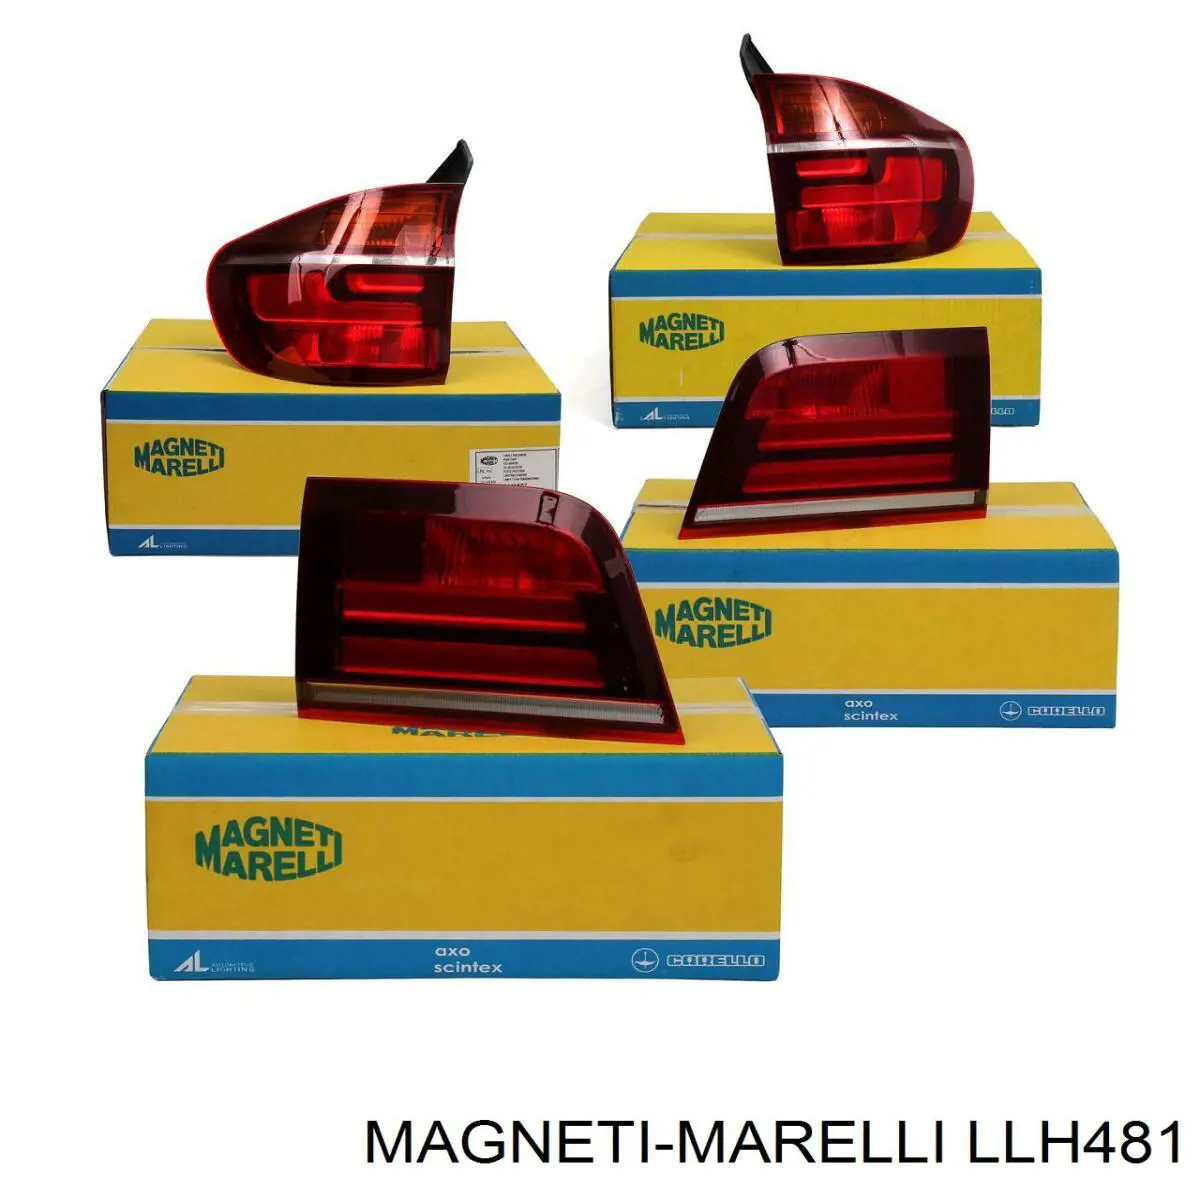 LLH481 Magneti Marelli piloto posterior interior derecho